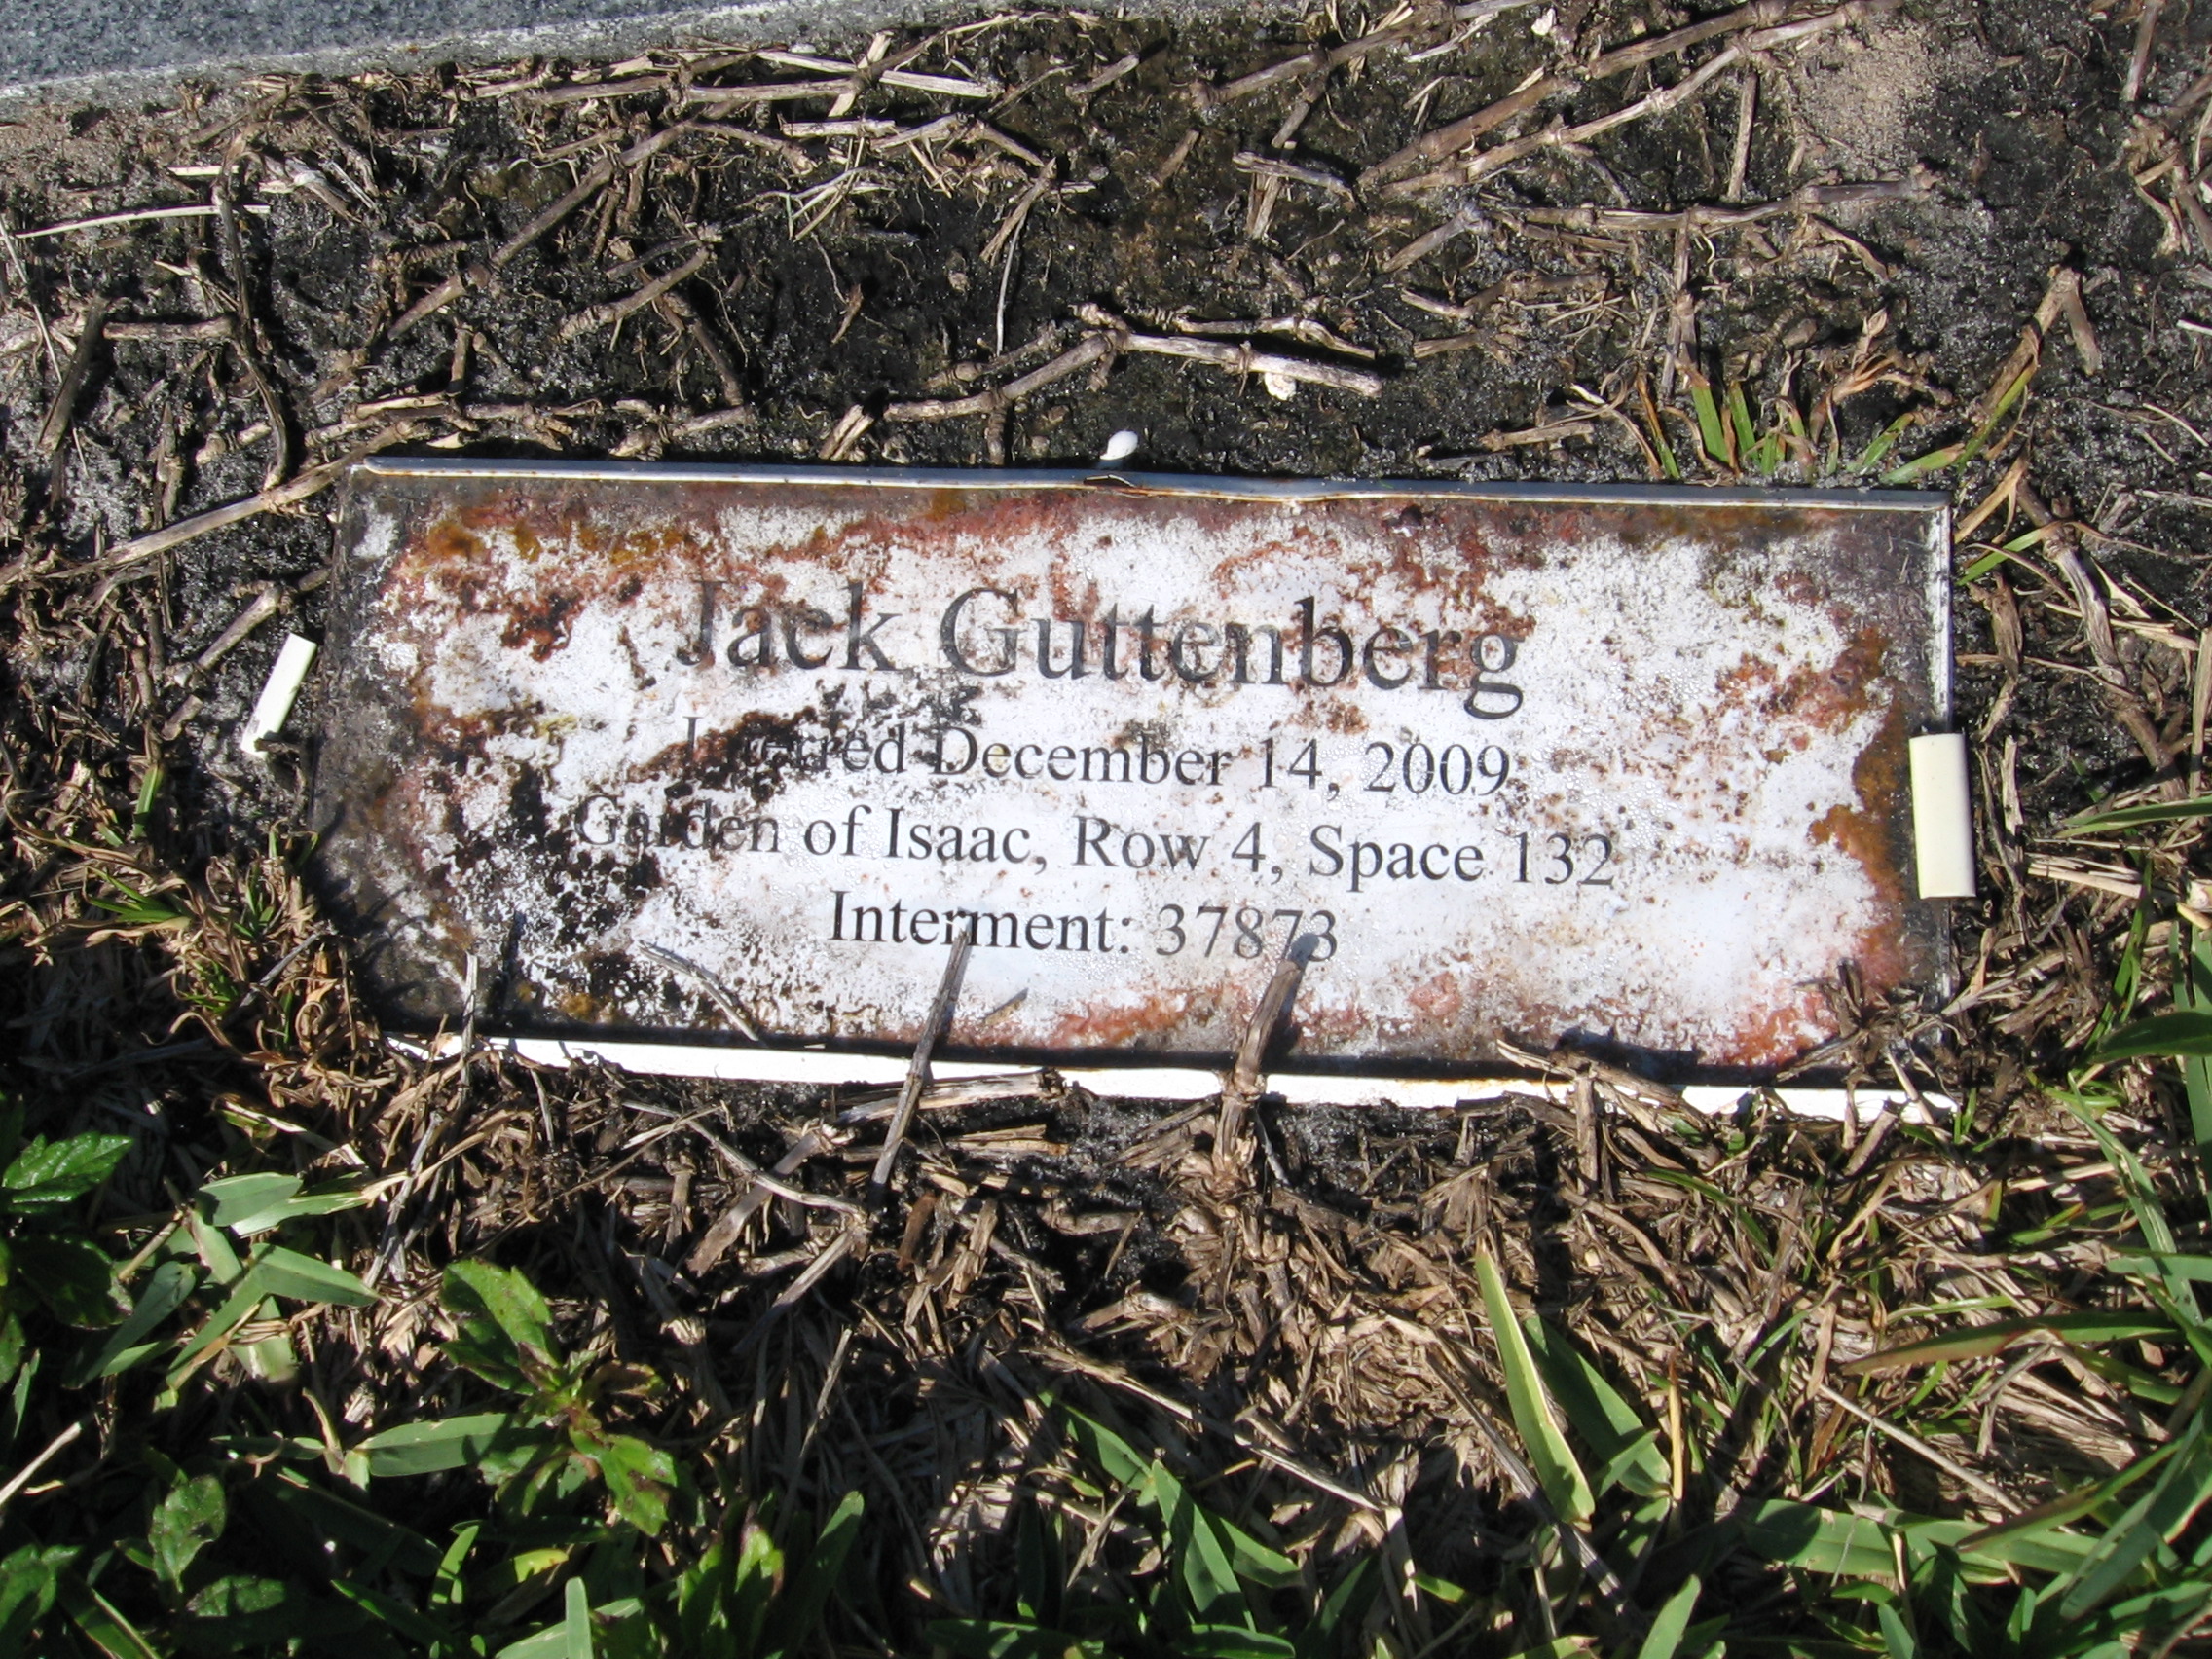 Jack Guttenberg